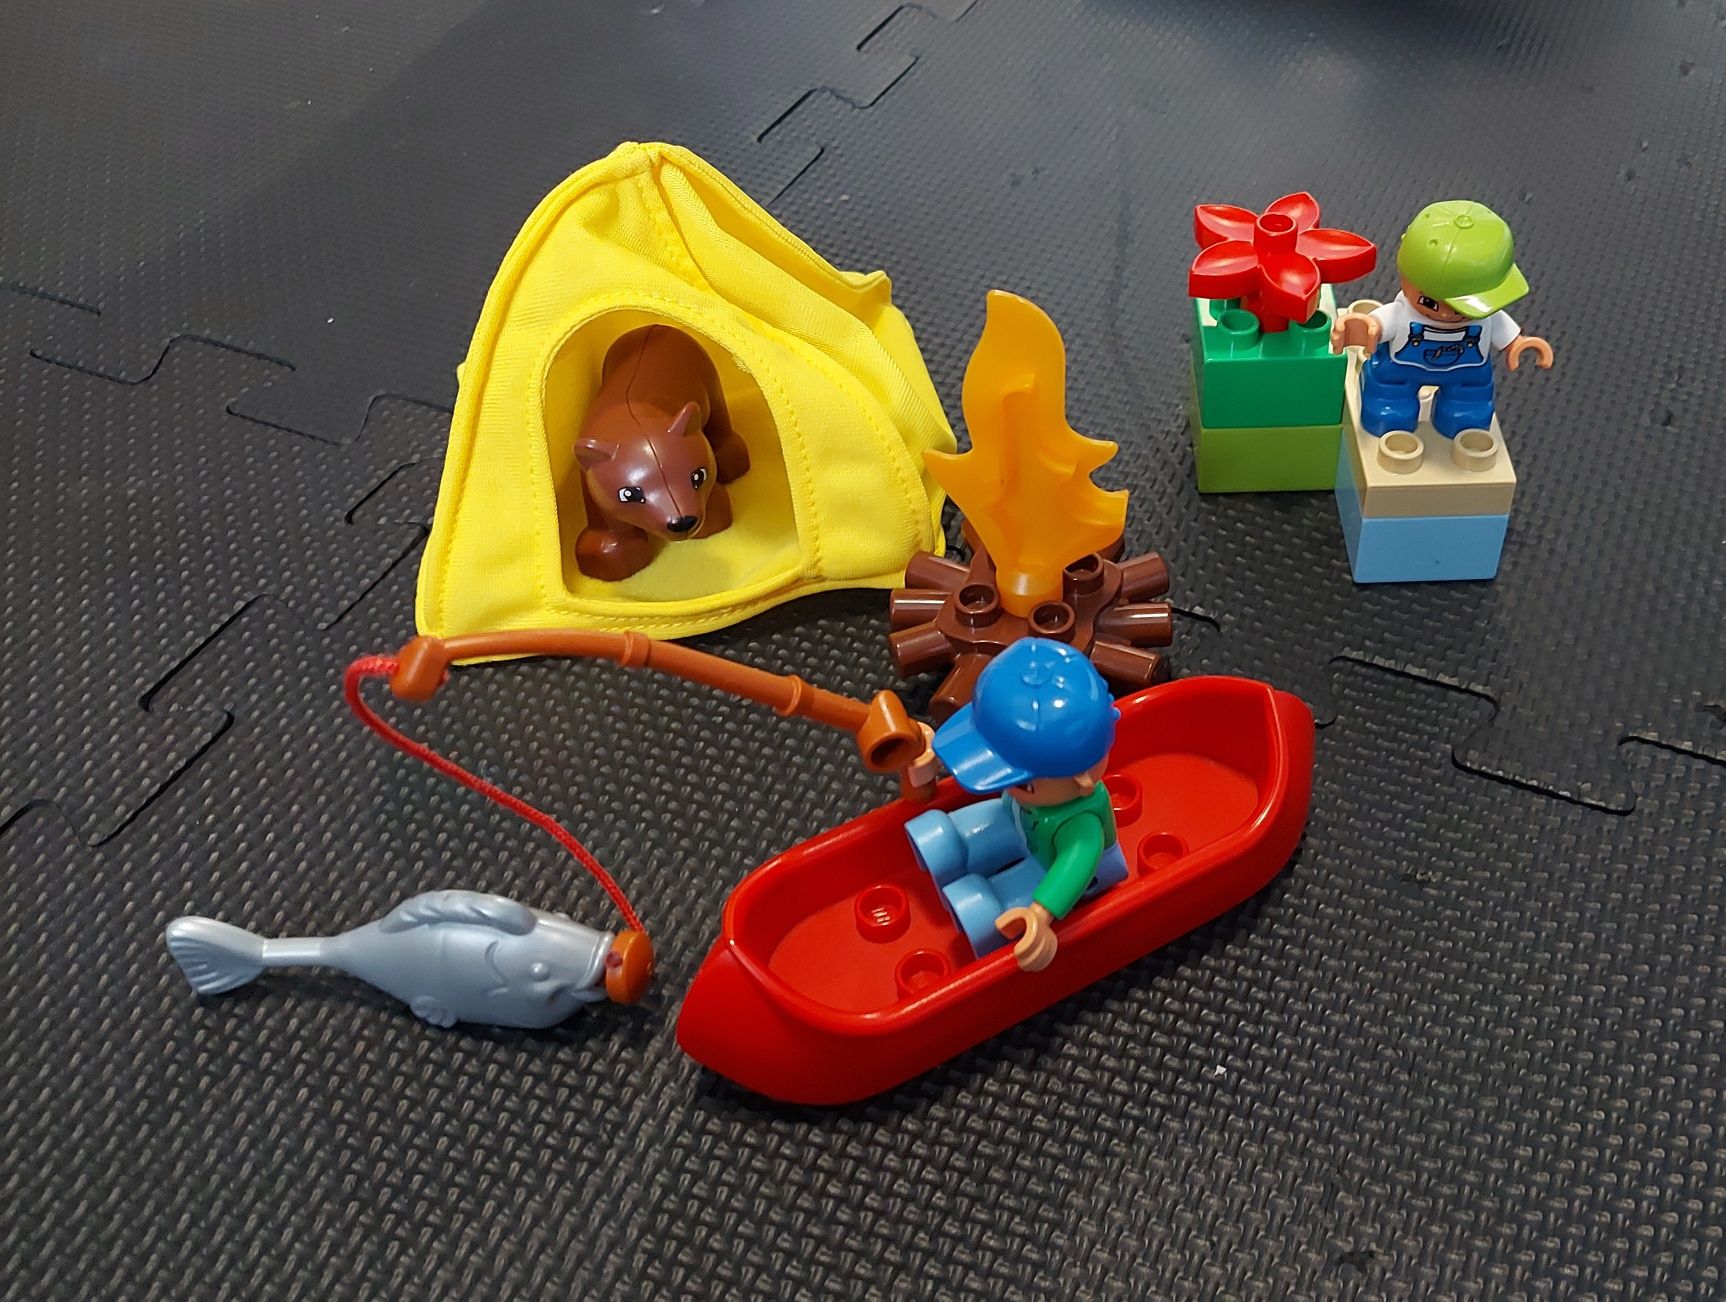 Lego 5654 Duplo Wycieczka na ryby - unikatowy